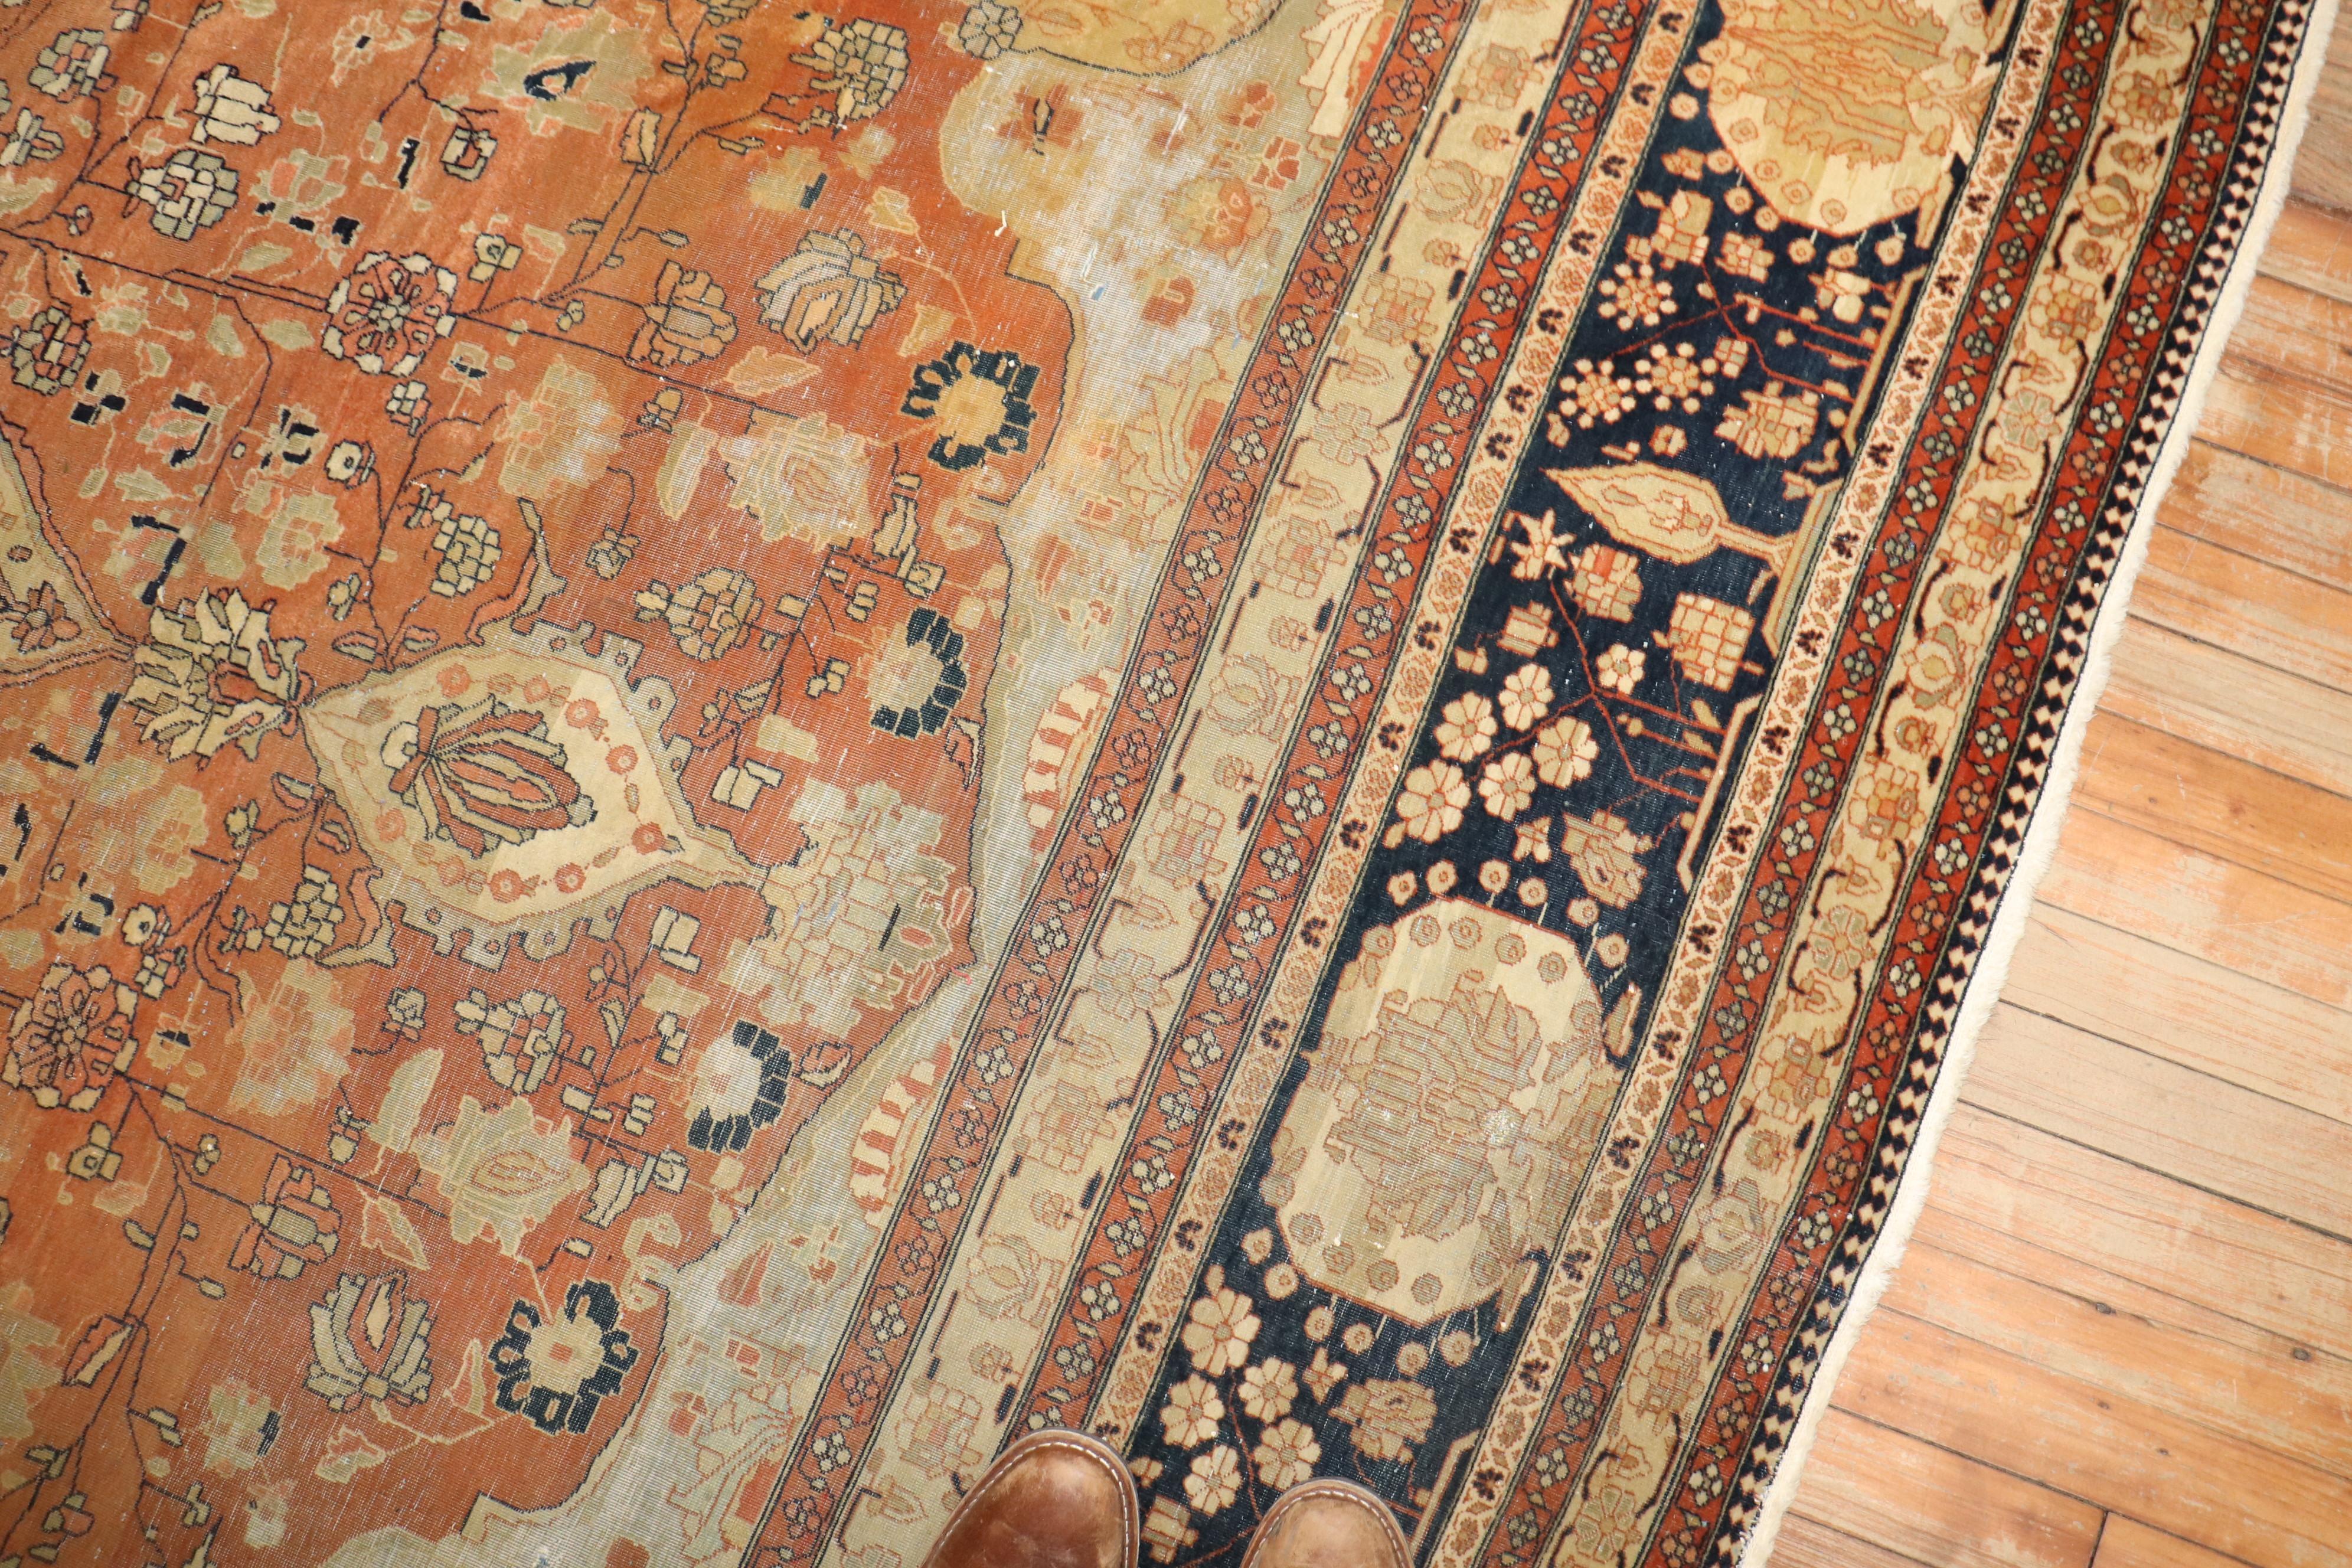 Ende 19. Jahrhundert  Mohtasham Kashan-Teppich

8'7'' x 12'

Die seltenste Gruppe von Kashan-Teppichen mit nicht-traditionellen Designs und Farbpaletten sind die 